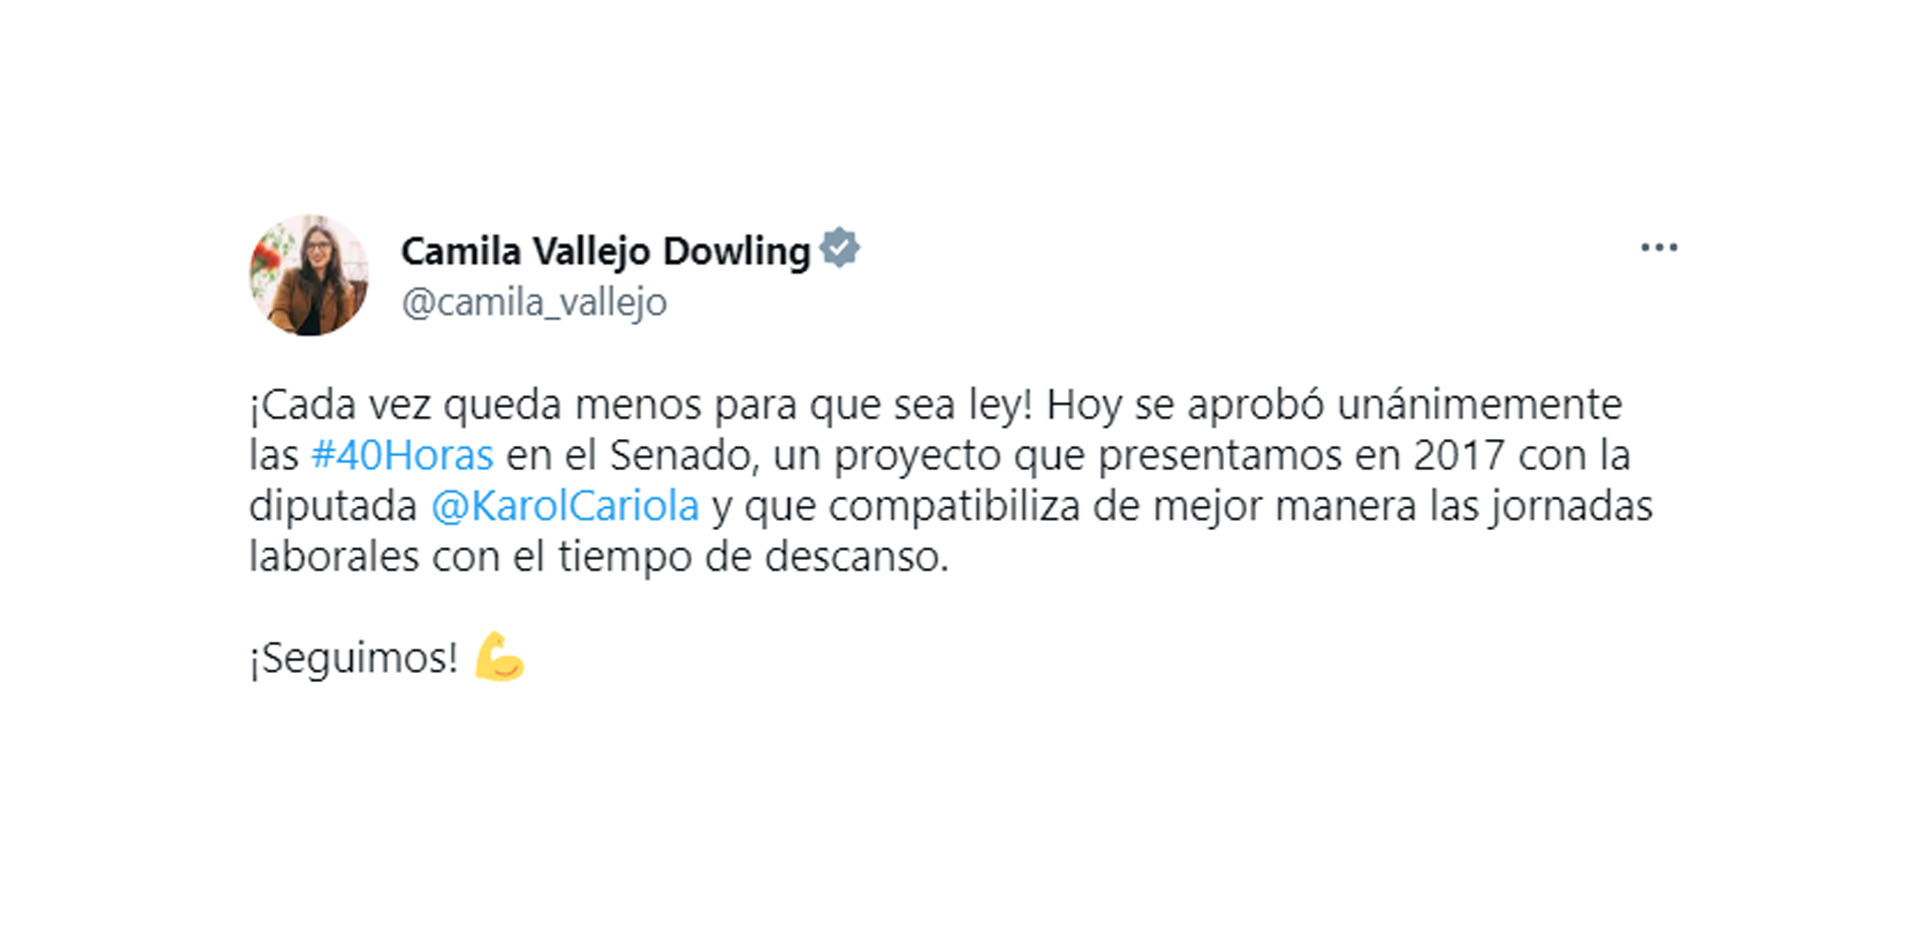 El mensaje de Camila Vallejo en Twitter